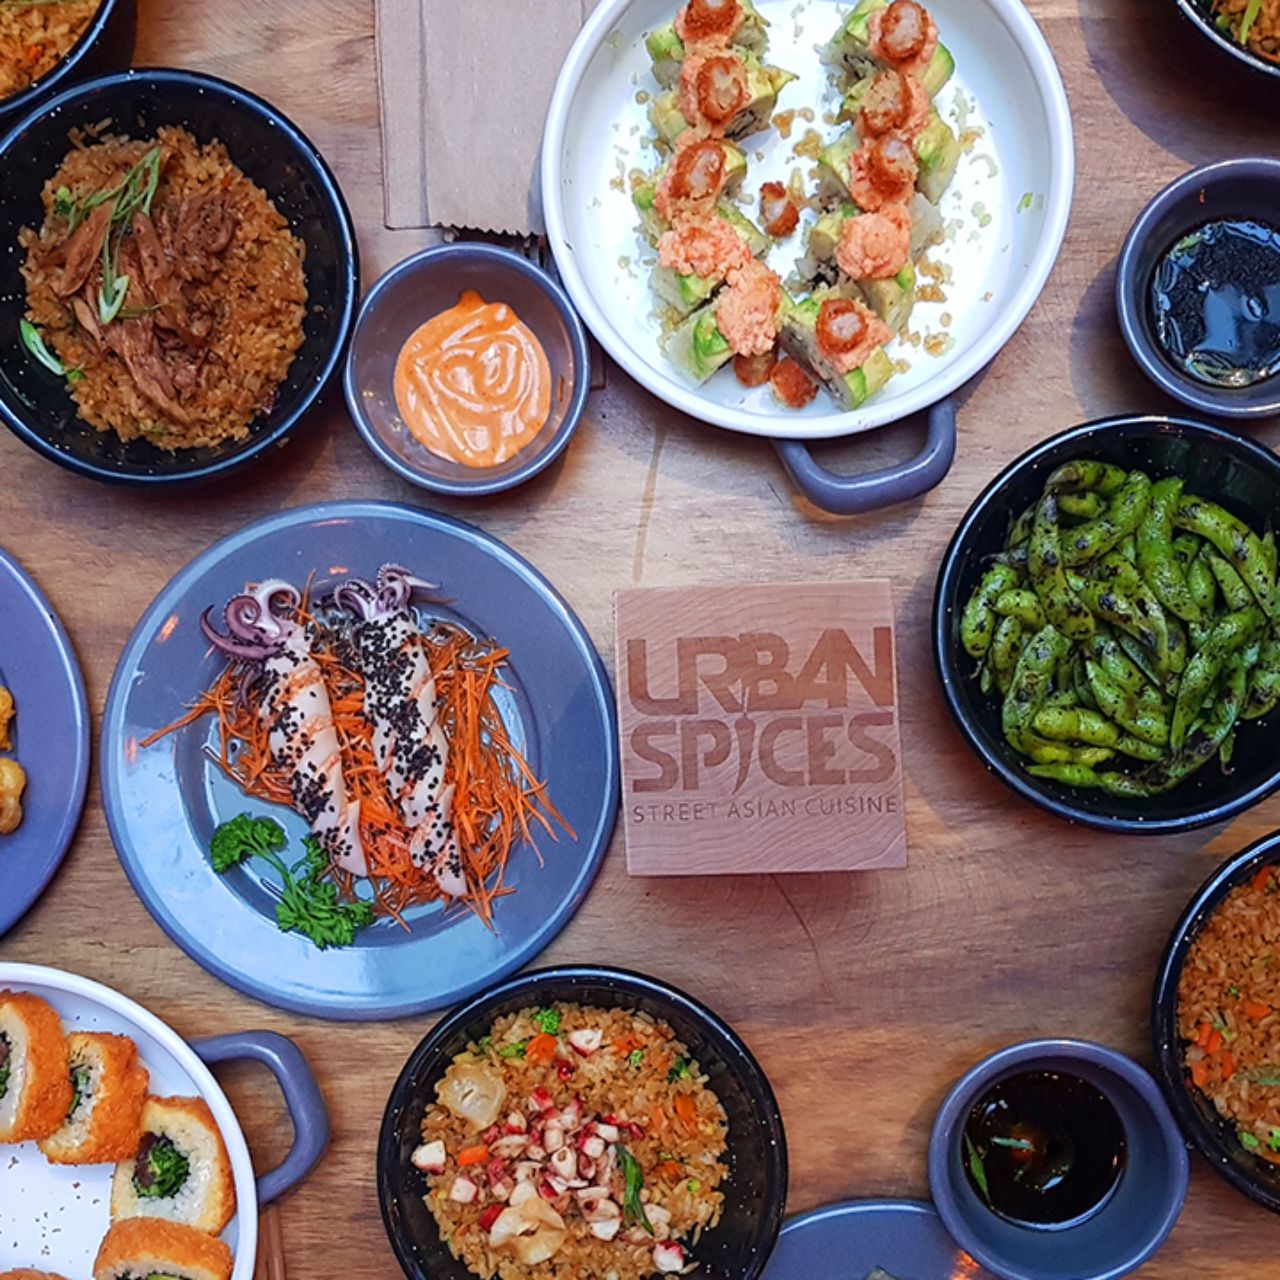 Restaurante Urban Spices - Santa Fe - Ciudad de México, , CDMX | OpenTable